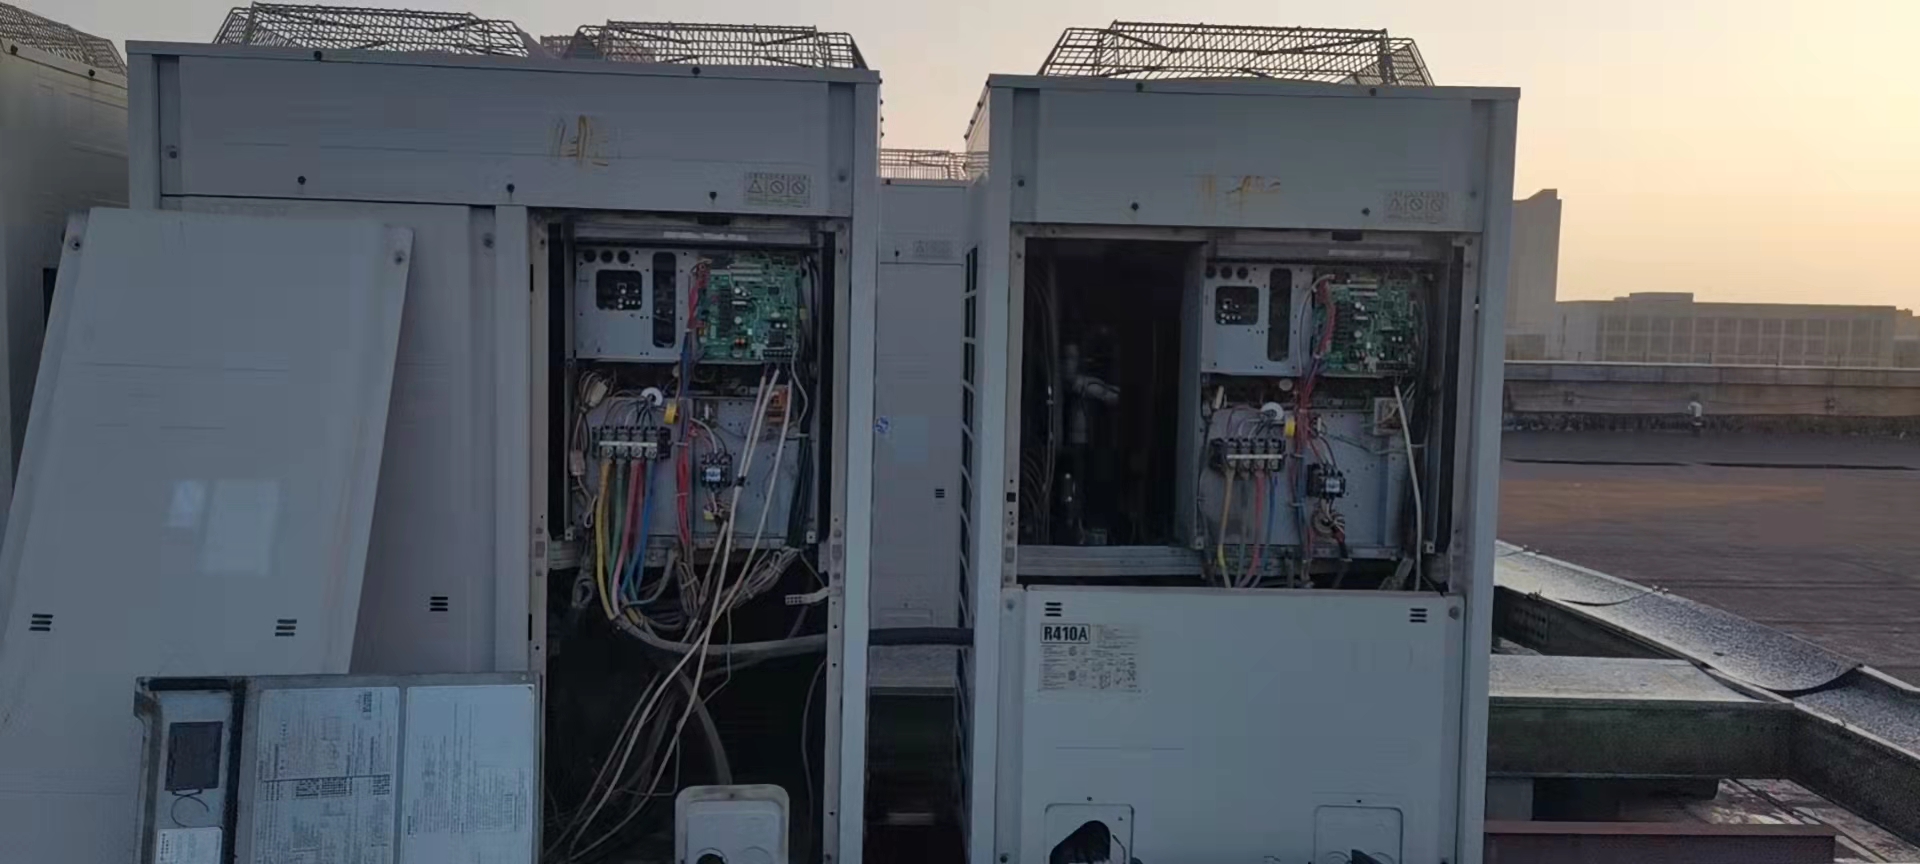 安徽中电信博微办公室空调集中智能控制系统